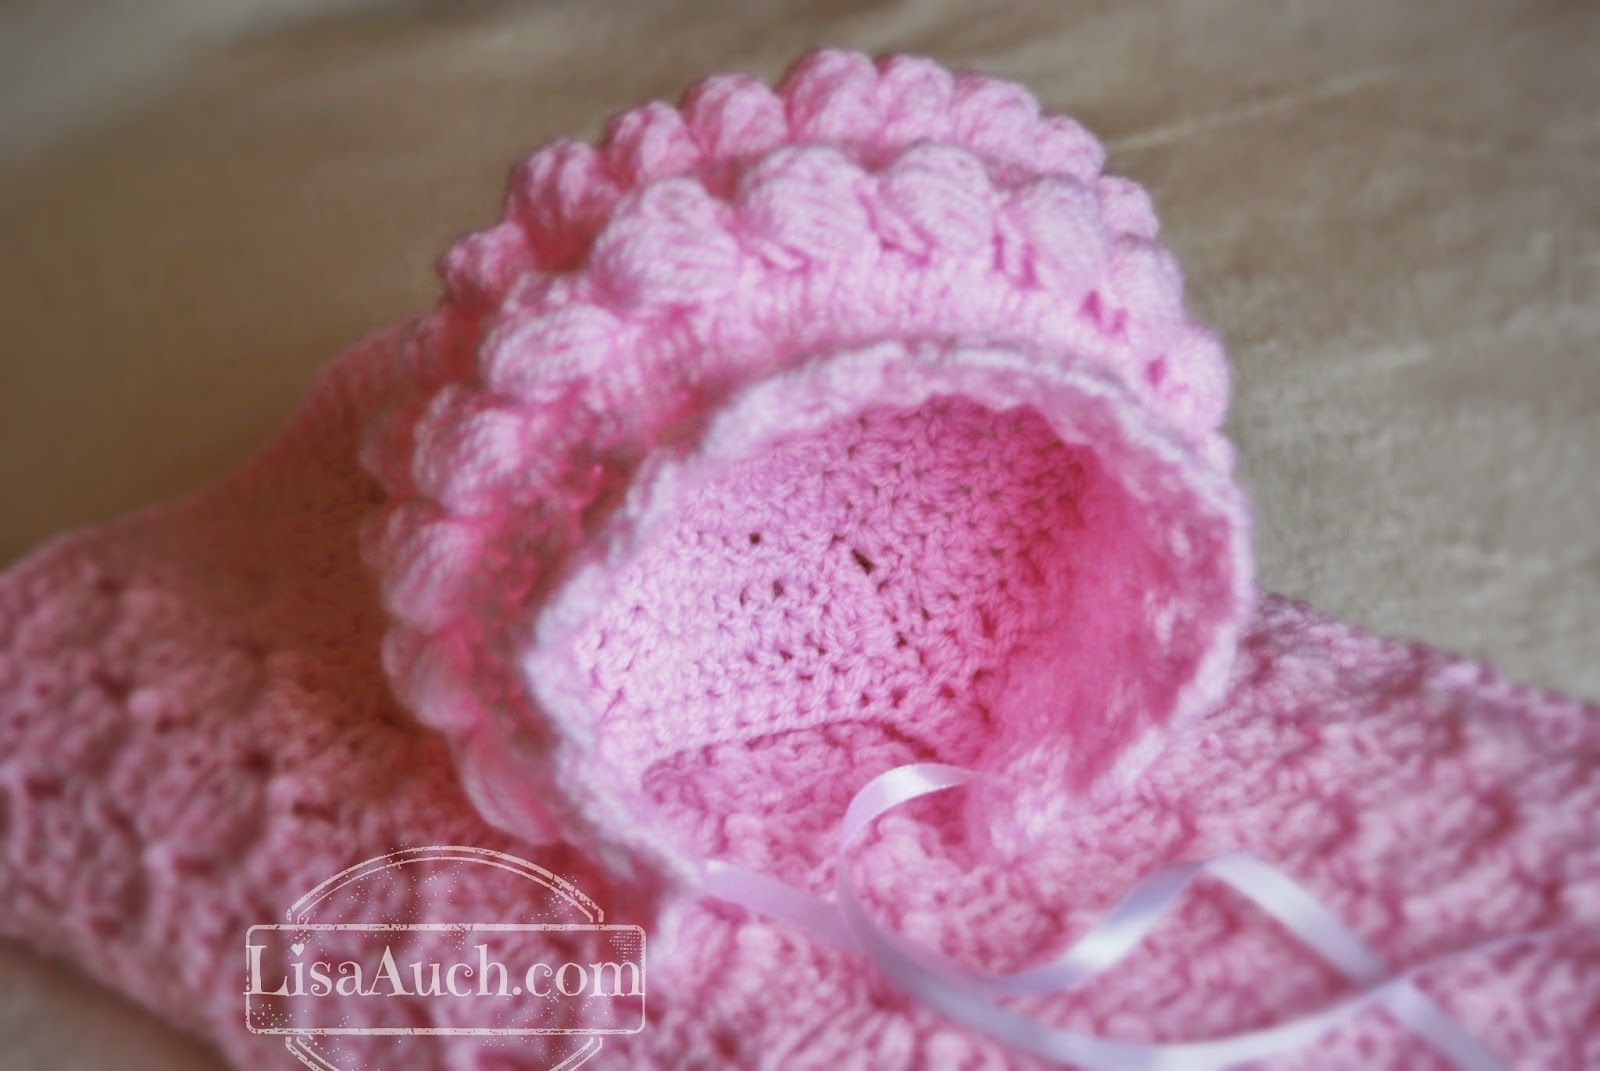 Free Crochet Baby Patterns Ba Bonnet Crochet Patterns Crochet Pinterest Crochet Ba